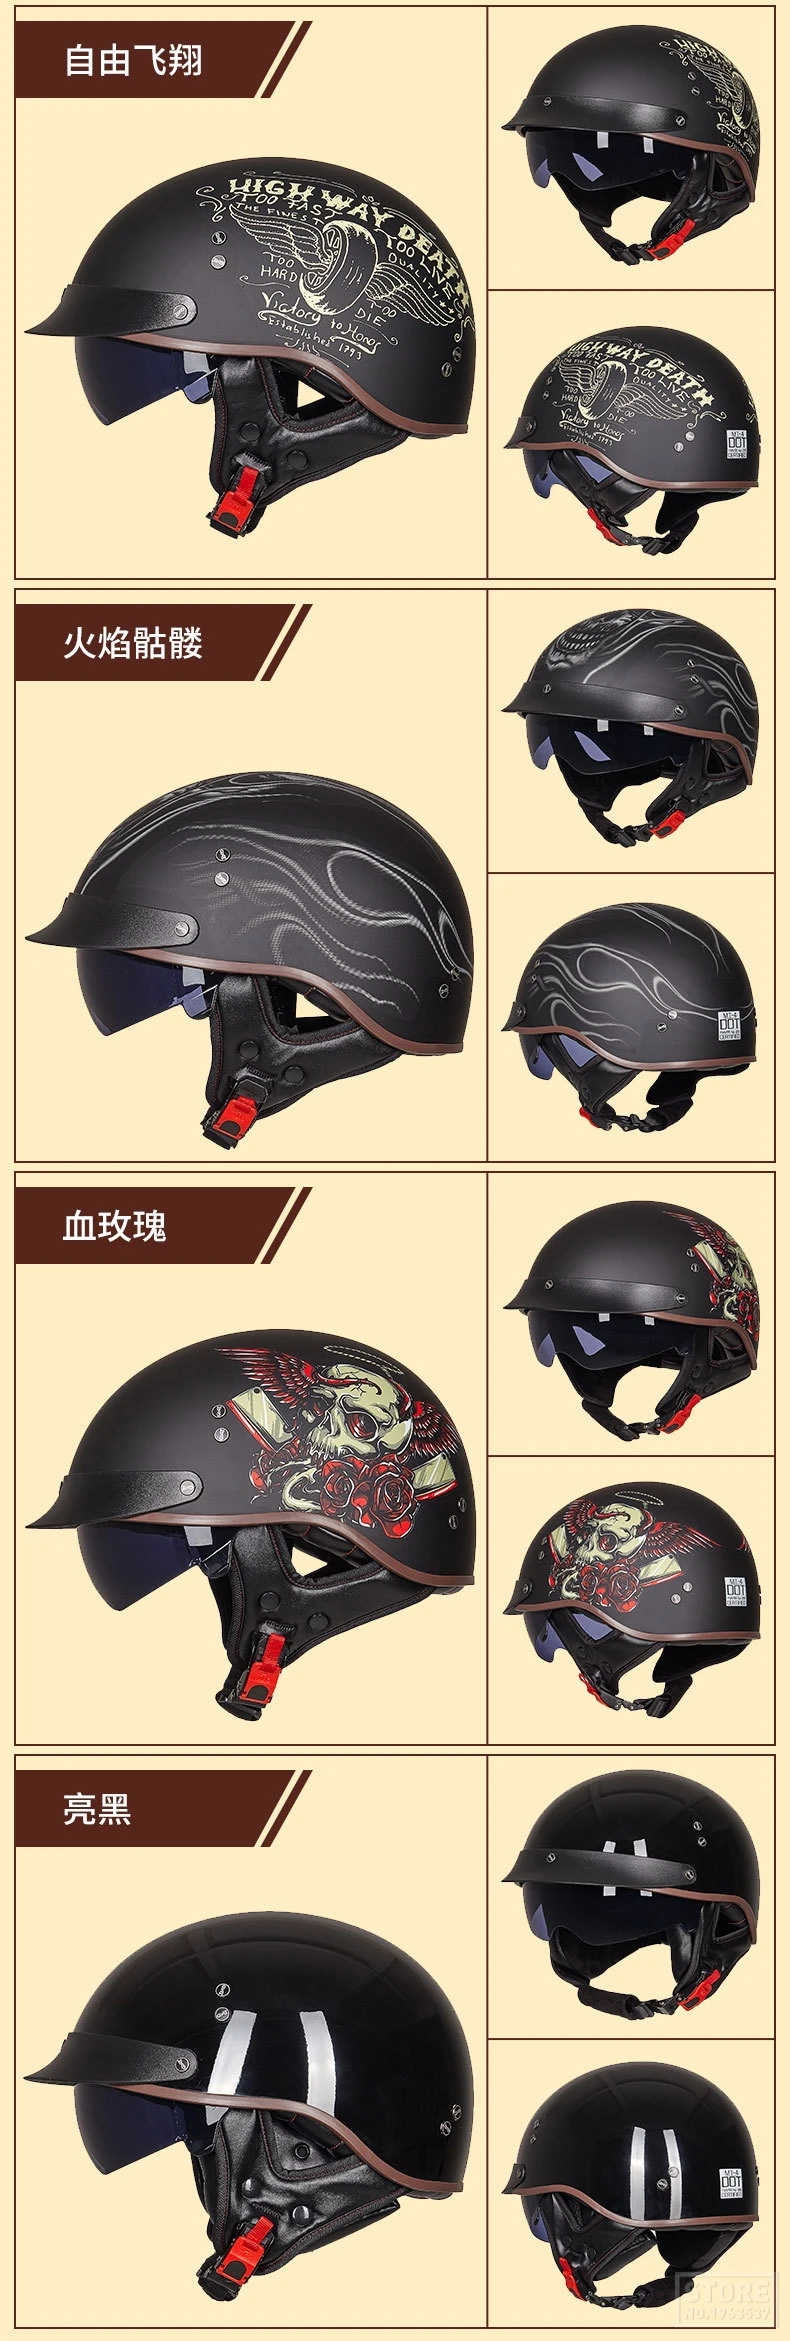 GXT DOT сертификация мотоциклетный шлем Ретро винтажный Мото шлем с открытым лицом скутер Байкер мотоциклетный шлем для езды для мужчин и женщин